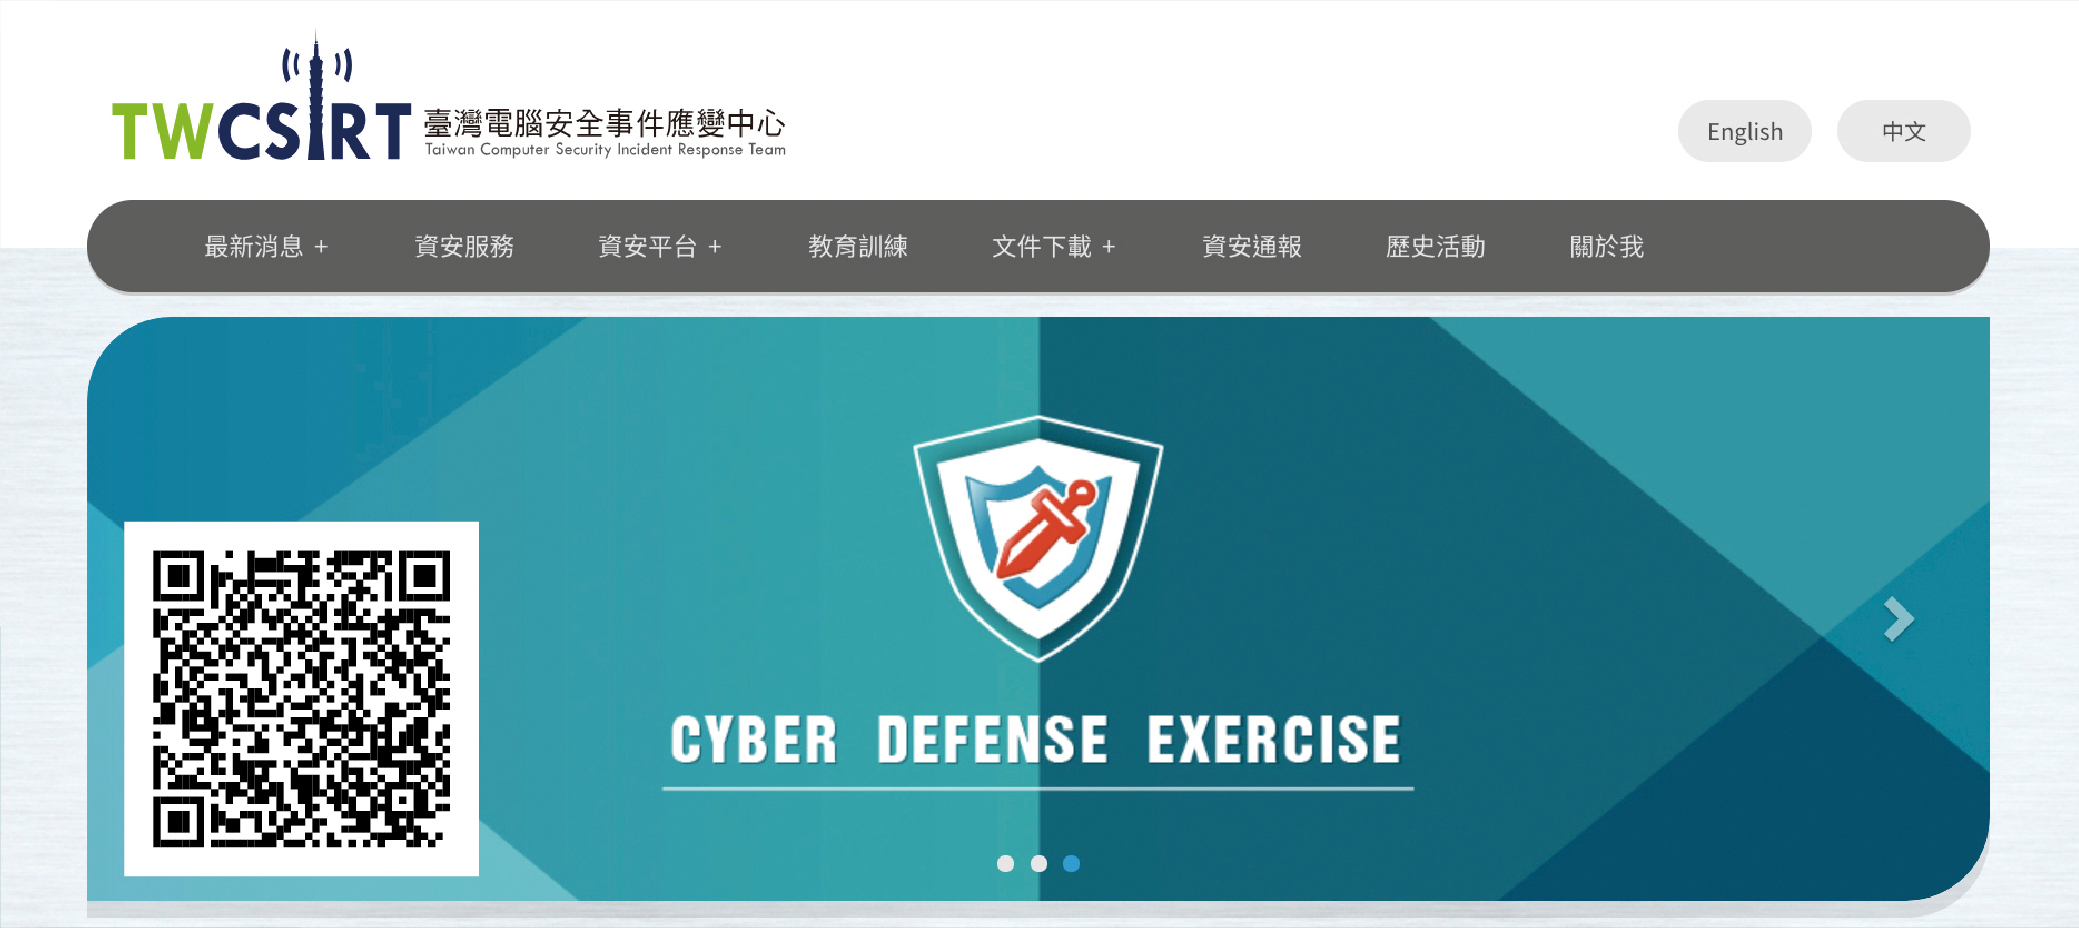 資訊安全事件的應變（掃描QR code可進入臺灣電腦安全事變應變中心官方網站）。